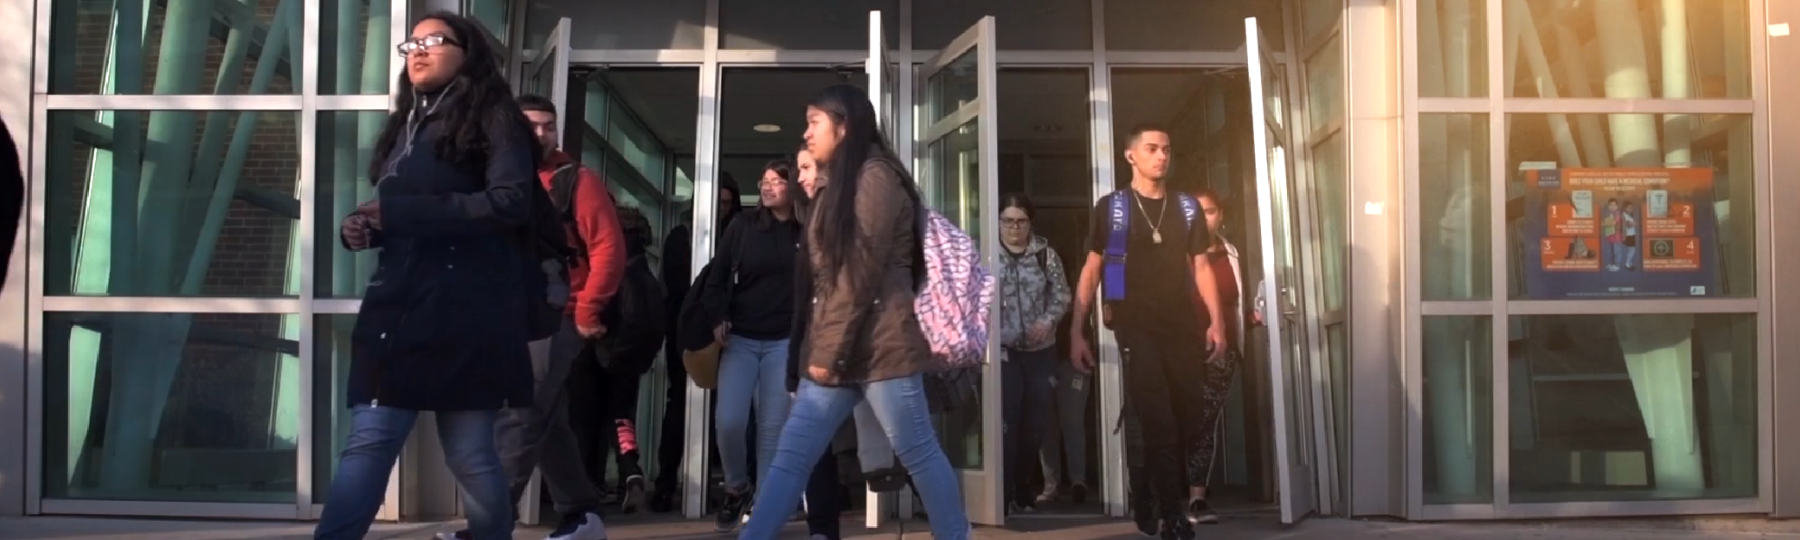 Freshmen walk out of their high school building